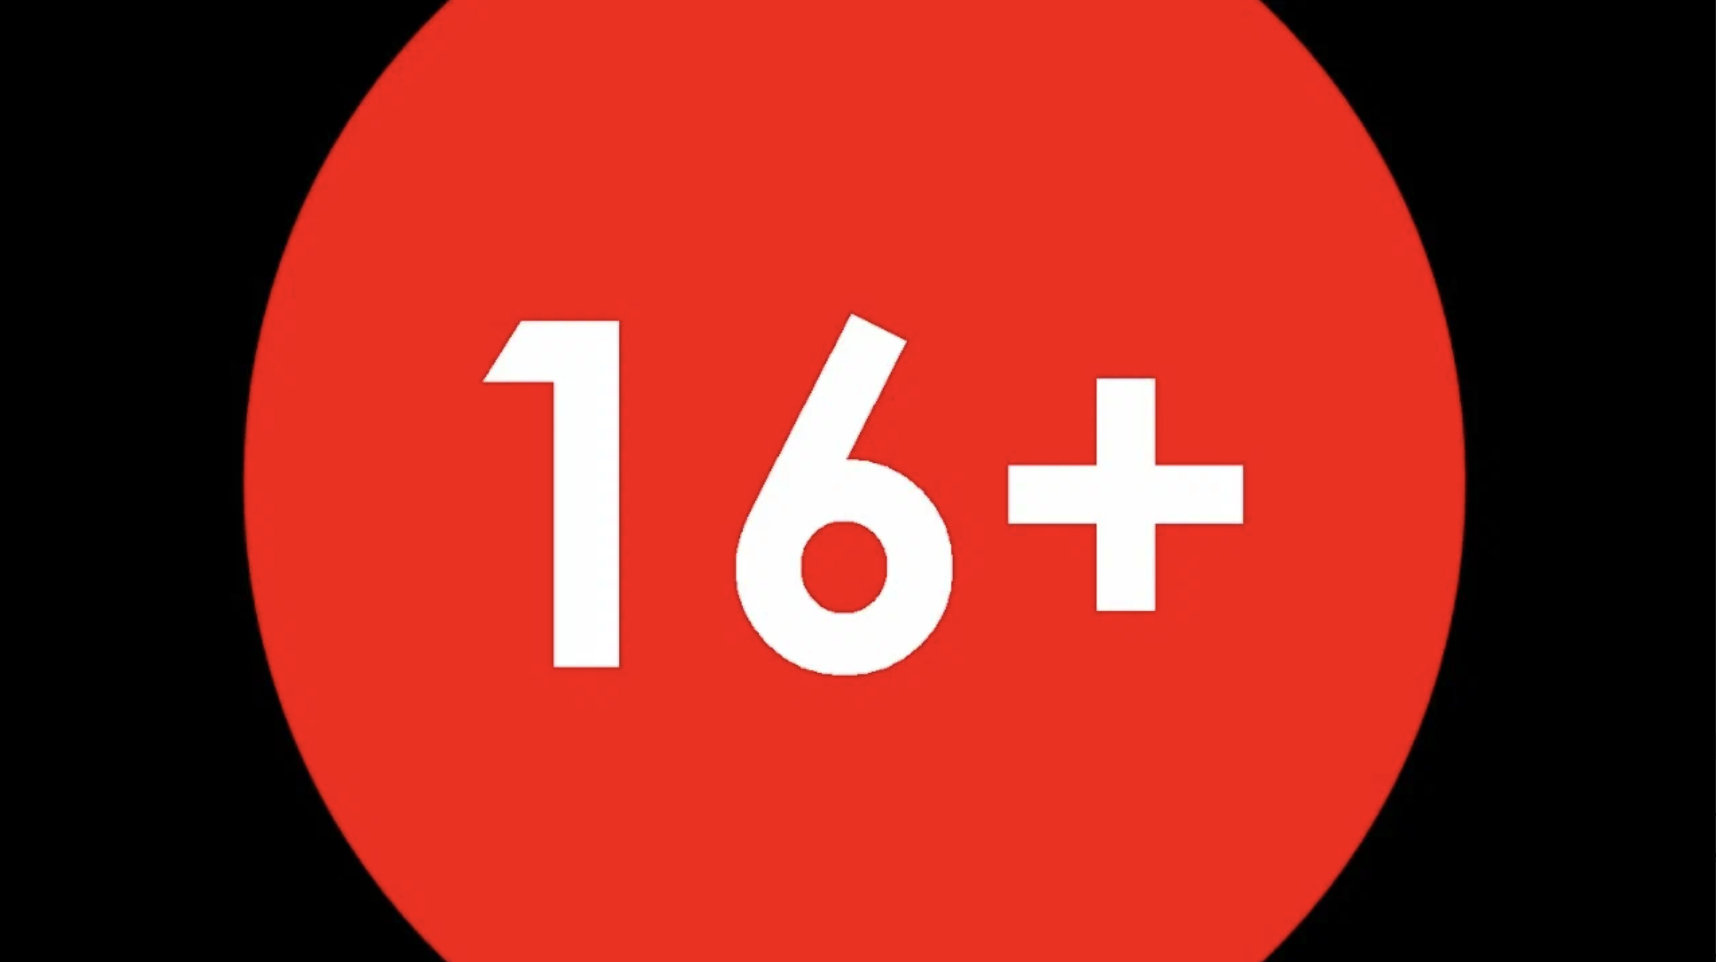 Возрастное ограничение 16+. Значок 16+. Знак ограничения по возрасту. 16+ Логотип.